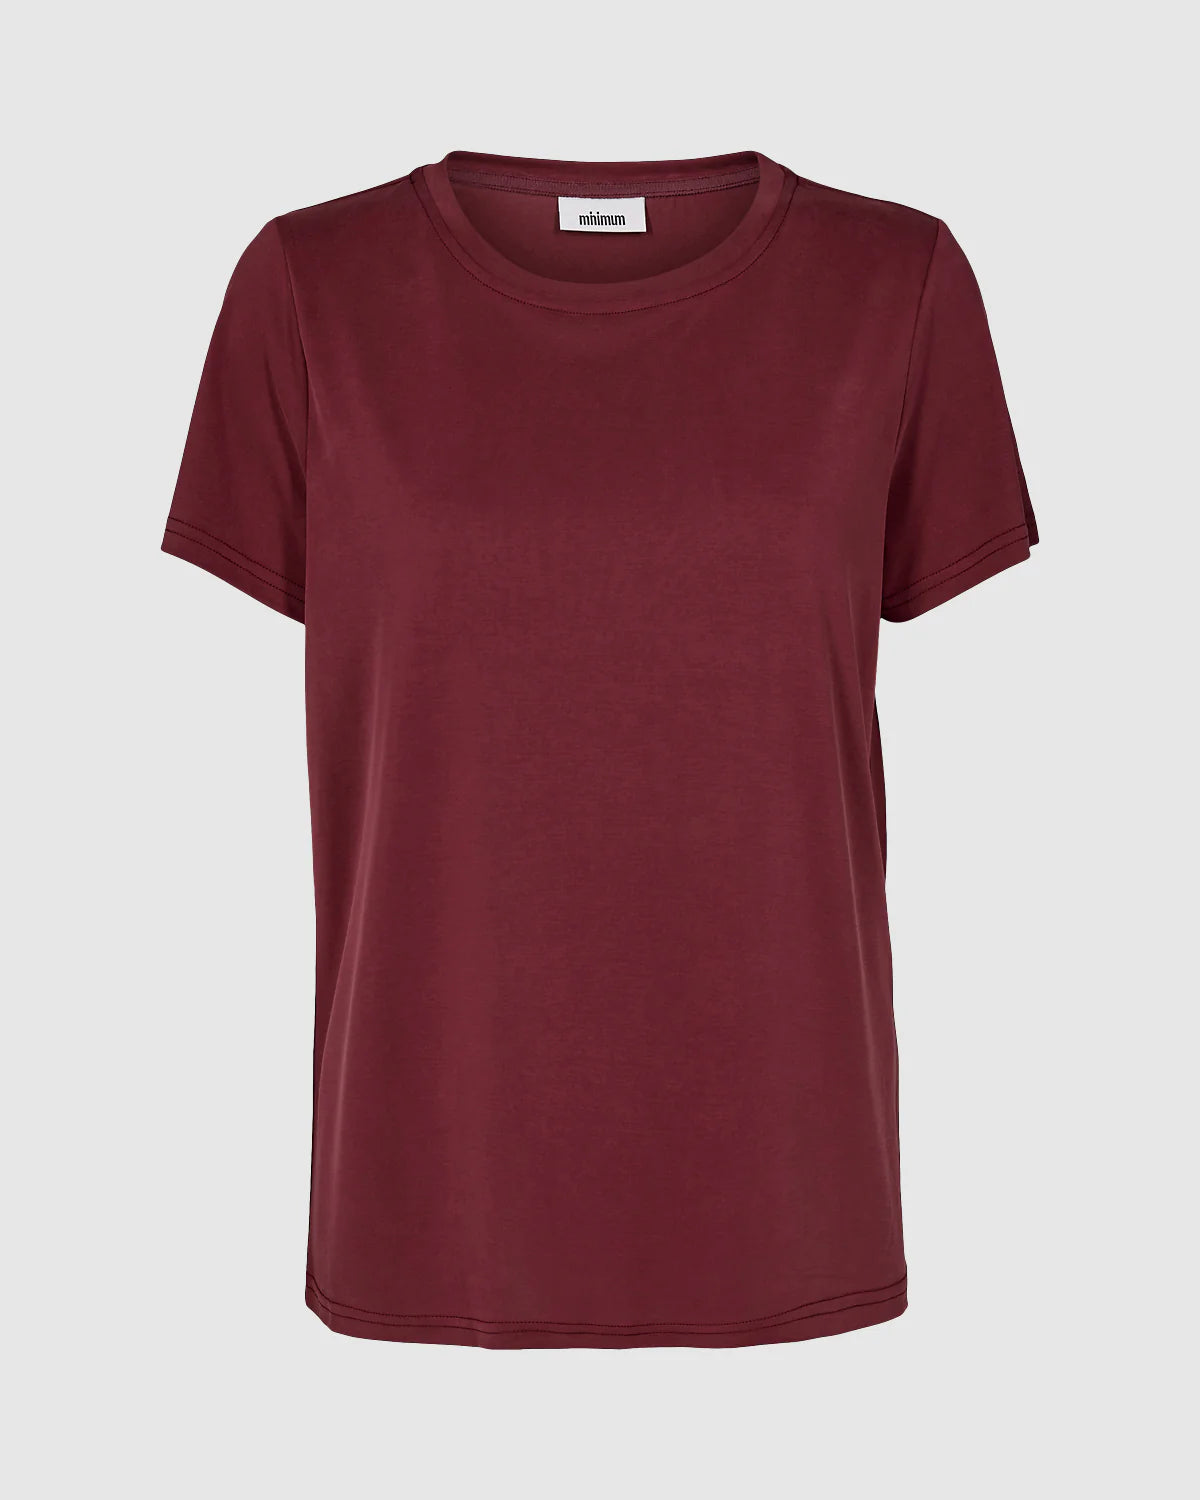 Rynah 2.0 0281 T-Shirt Burgundy